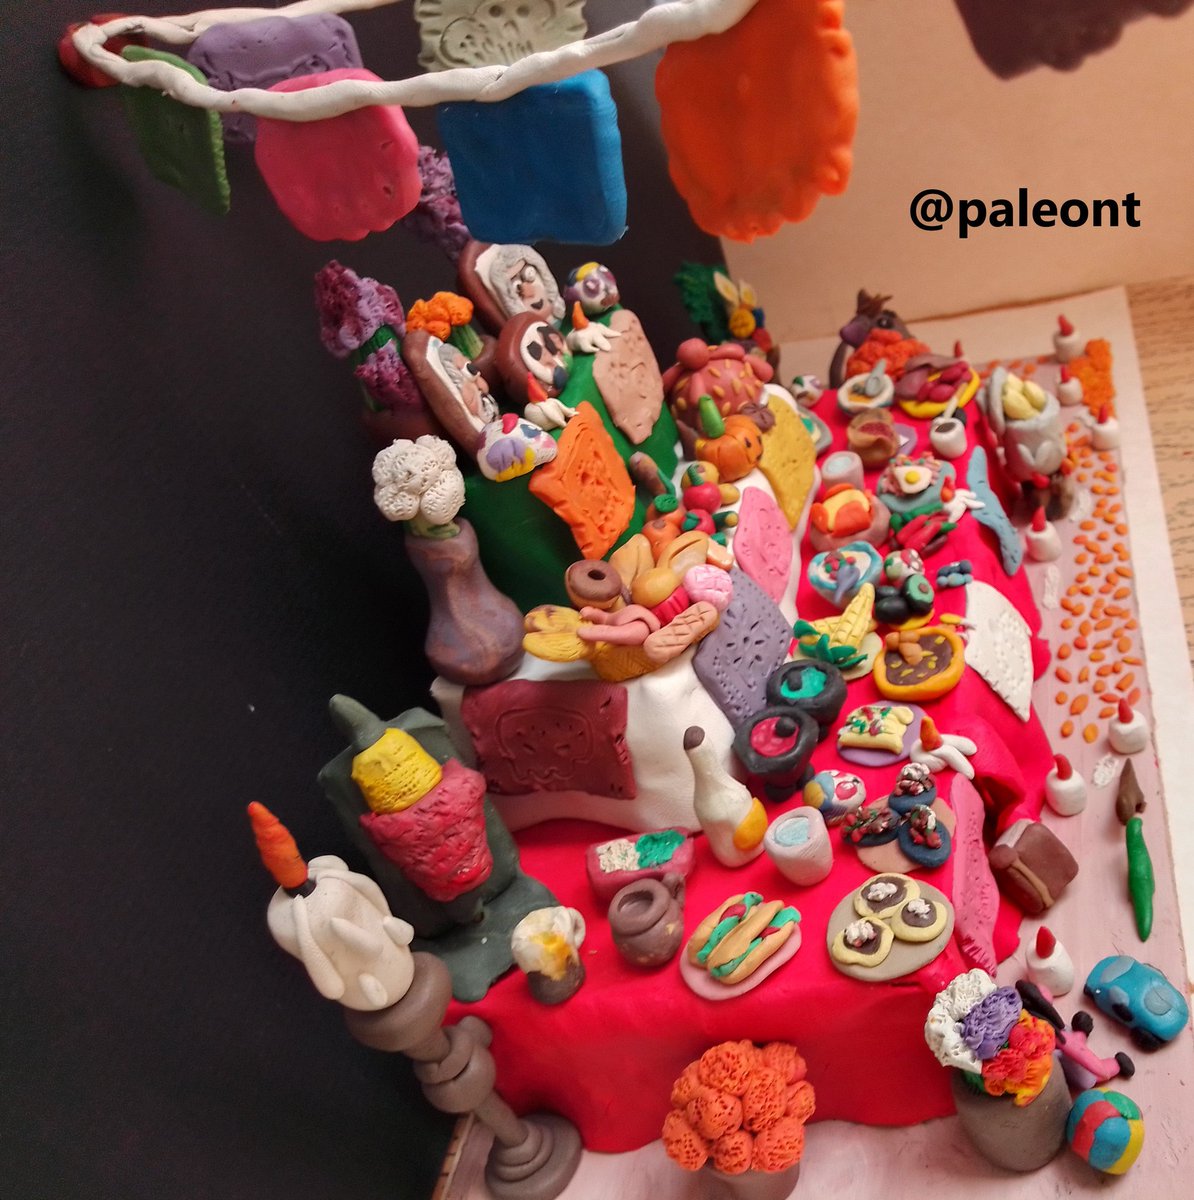 🇲🇽 Mi #ofrenda en #plastilina, sólo me nació hacerla y poder compartirla. Me encanta mi #México y sus #tradiciones. El conocer más de mi país ha sido gracias a los libros y a @ursulacamba @VekaDuncan @barcenairene @MVivant @hdemauleon @Cuauhtemoc_1521 entre otros.#clay #art #arte